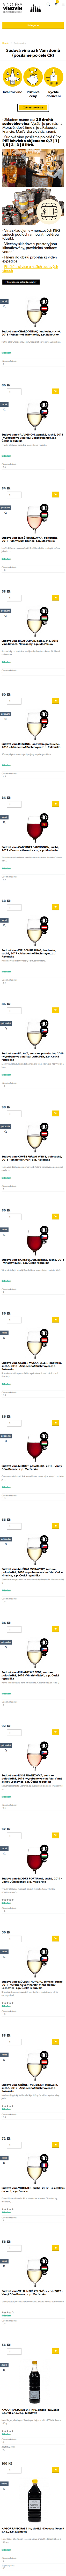 Tvorba nového e-shopu vinovin.cz - Screenshot mobilní verze